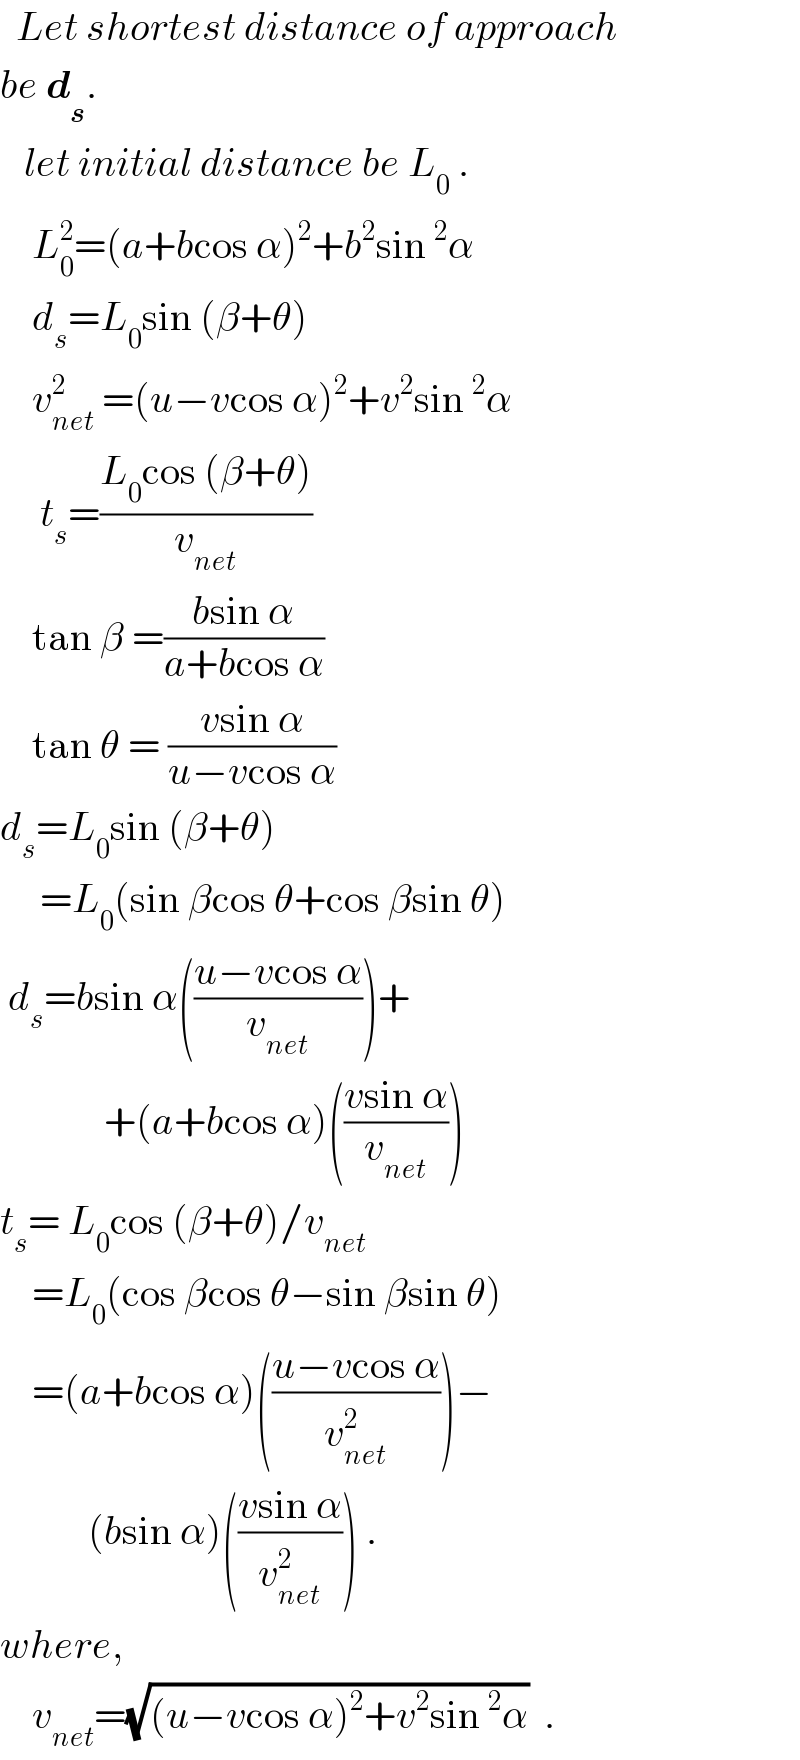   Let shortest distance of approach  be d_s .     let initial distance be L_0  .      L_0 ^2 =(a+bcos α)^2 +b^2 sin^2 α      d_s =L_0 sin (β+θ)      v_(net) ^2  =(u−vcos α)^2 +v^2 sin^2 α       t_s =((L_0 cos (β+θ))/v_(net) )      tan β =((bsin α)/(a+bcos α))      tan θ = ((vsin α)/(u−vcos α))   d_s =L_0 sin (β+θ)       =L_0 (sin βcos θ+cos βsin θ)   d_s =bsin α(((u−vcos α)/v_(net) ))+               +(a+bcos α)(((vsin α)/v_(net) ))   t_s = L_0 cos (β+θ)/v_(net)       =L_0 (cos βcos θ−sin βsin θ)      =(a+bcos α)(((u−vcos α)/v_(net) ^2 ))−             (bsin α)(((vsin α)/v_(net) ^2 )) .  where,      v_(net) =(√((u−vcos α)^2 +v^2 sin^2 α))  .  